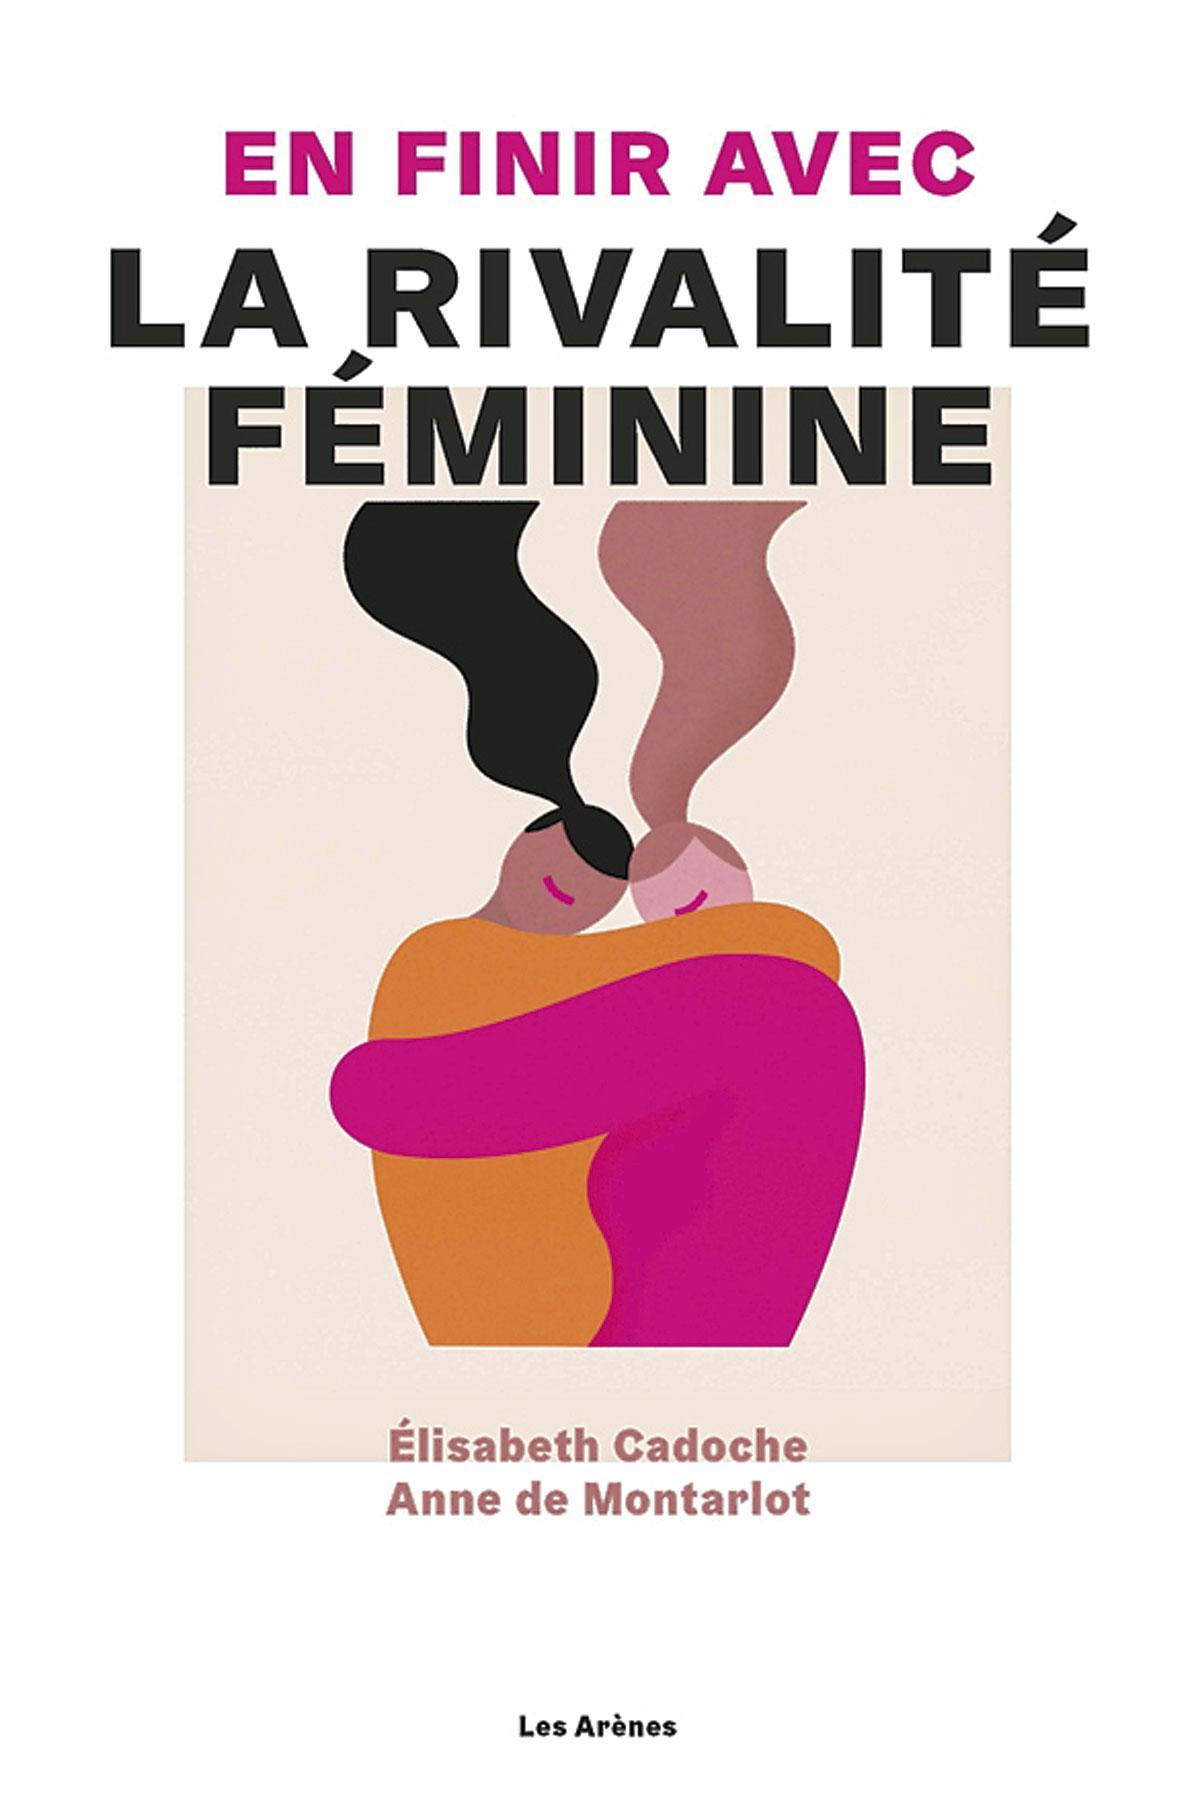 En finir avec la rivalité féminine, par Elisabeth Cadoche et Anne de Montarlot, Les Arènes.